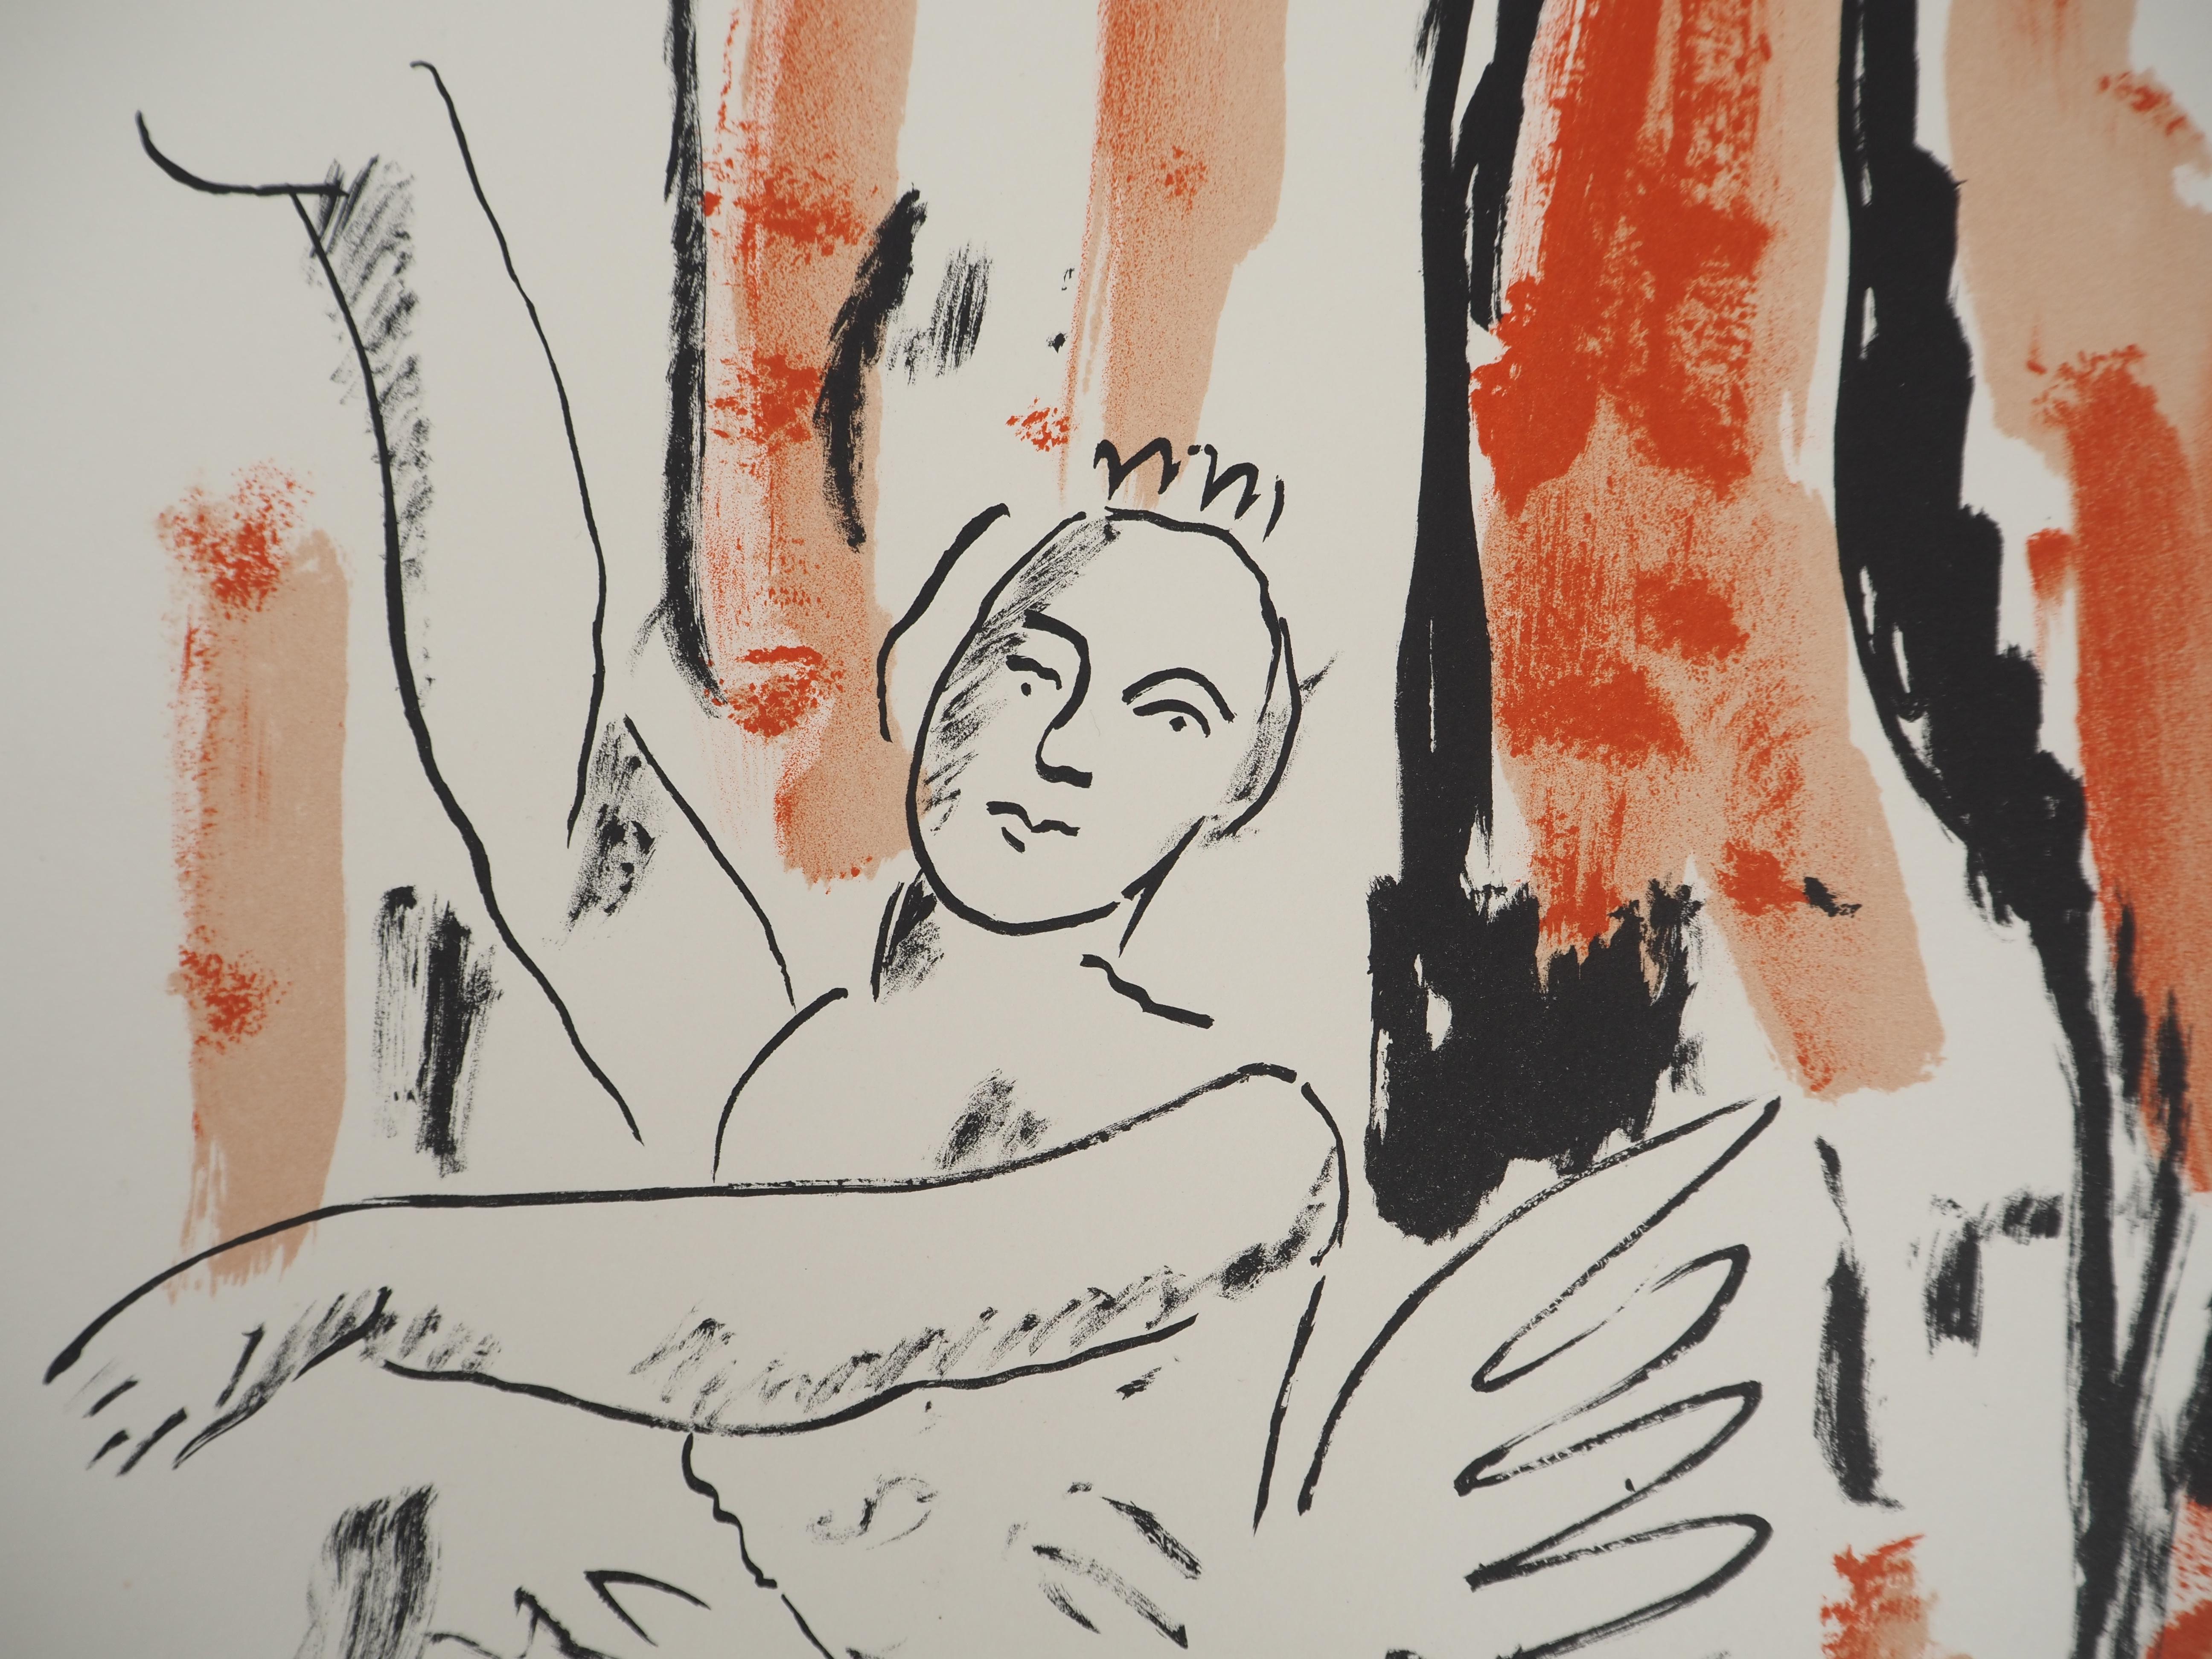 Fernand Léger
Die Ballerina, 1959

Original-Lithographie (Atelier Mourlot)
Signiert mit dem Stempel des Künstlers
Limitiert auf 180 Exemplare (hier nummeriert 160)
Auf Arches Vellum  66 x 50,5 cm (ca. 25,9 x 19,6 Zoll)

REFERENZEN :
- Gesamtkatalog